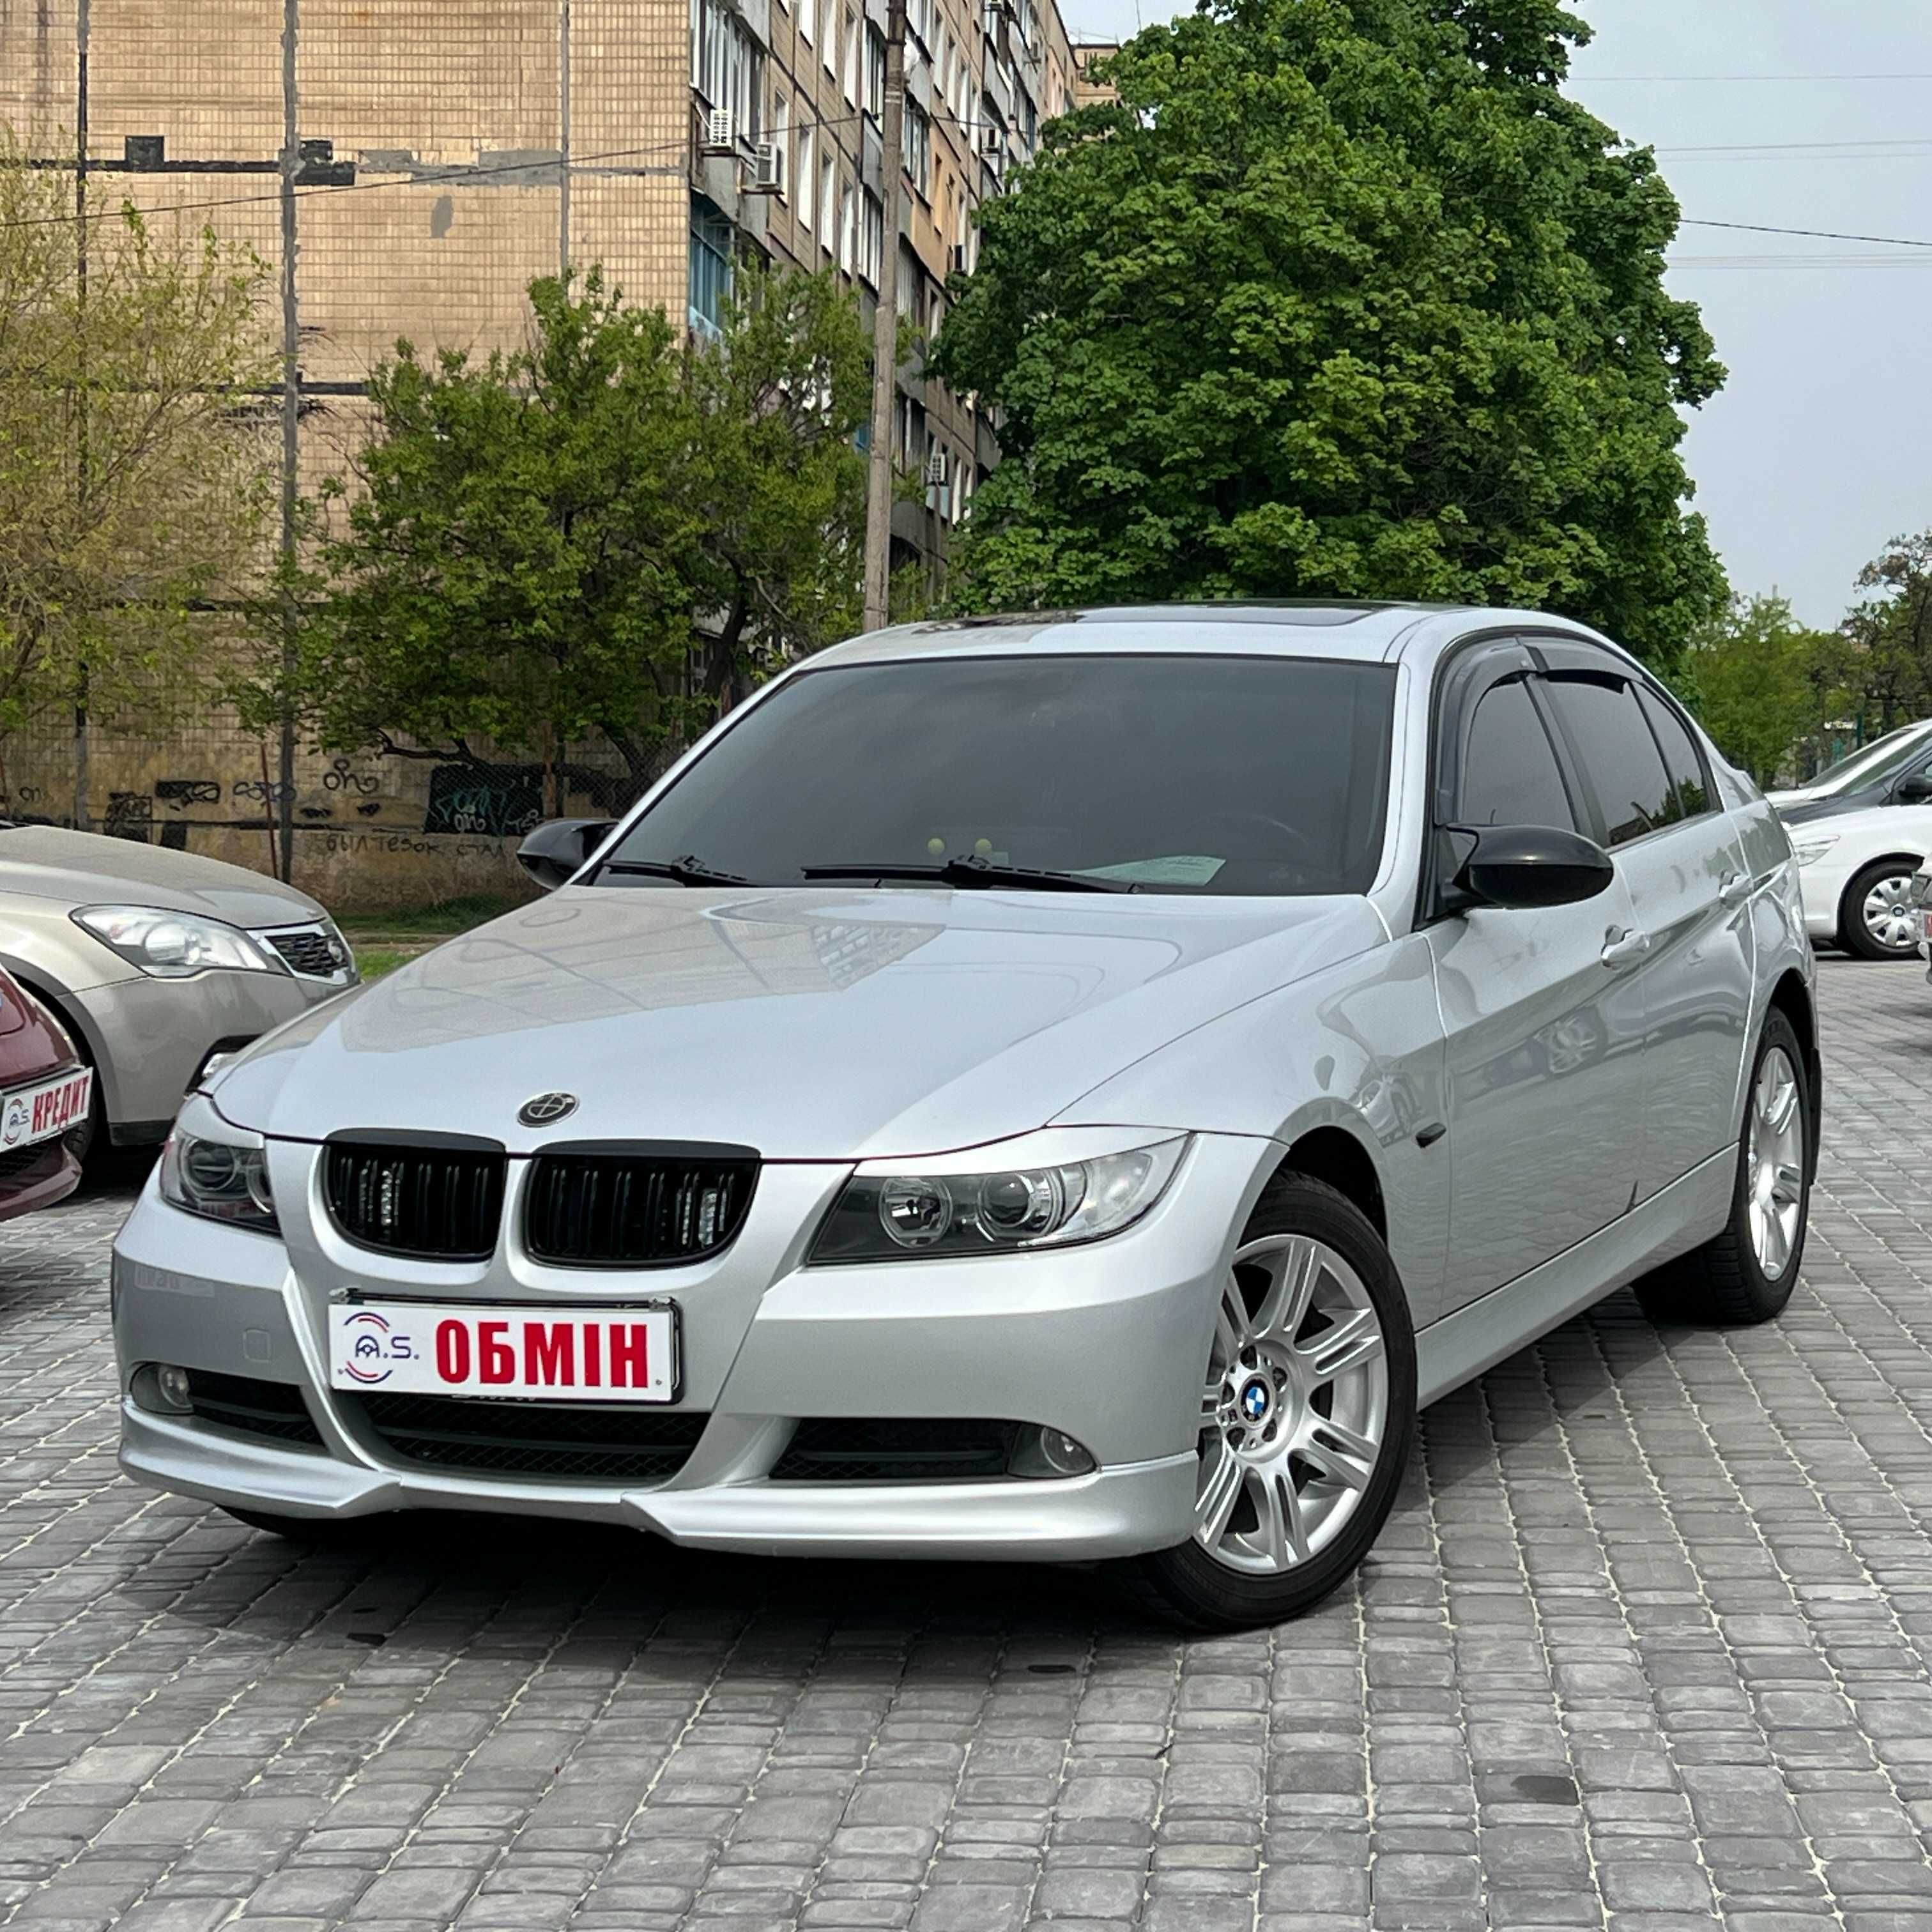 Продам BMW 320і 2005 рік можлива розстрочка, кредит,обмін!